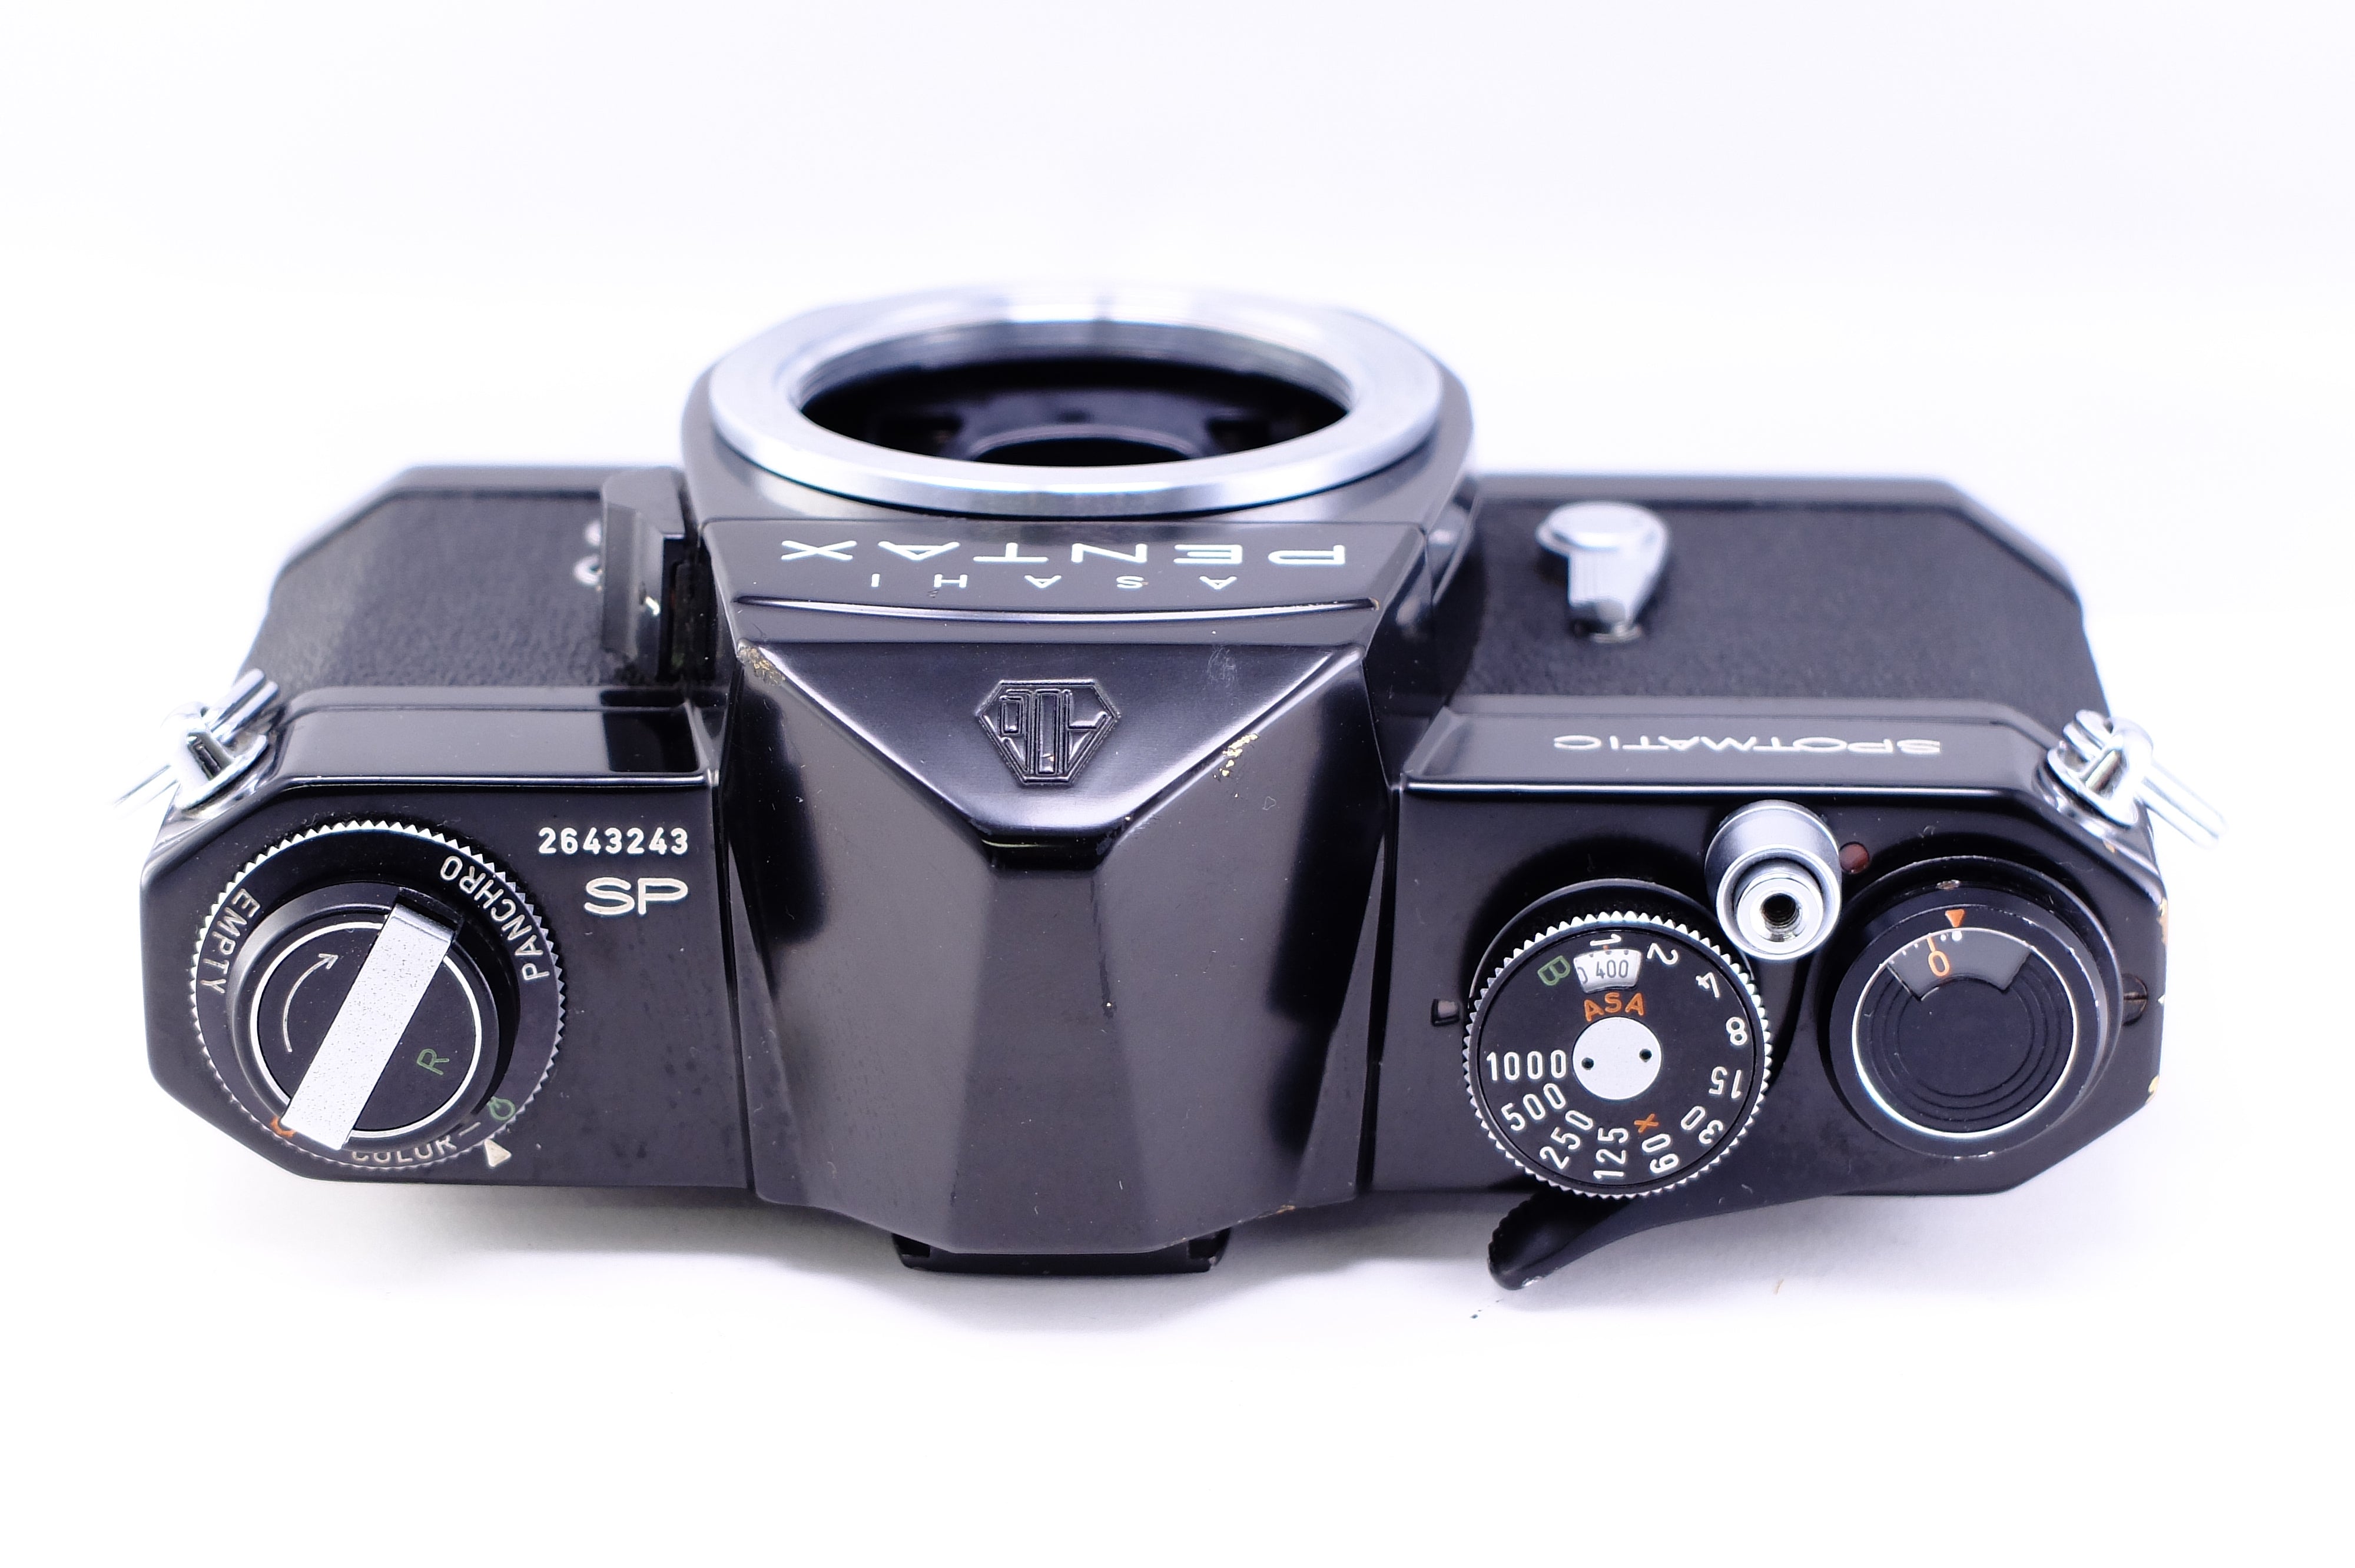 豪華 PENTAX SP / 55mm F1.8 / 200mm F4 レンズ2本付 フィルムカメラ 